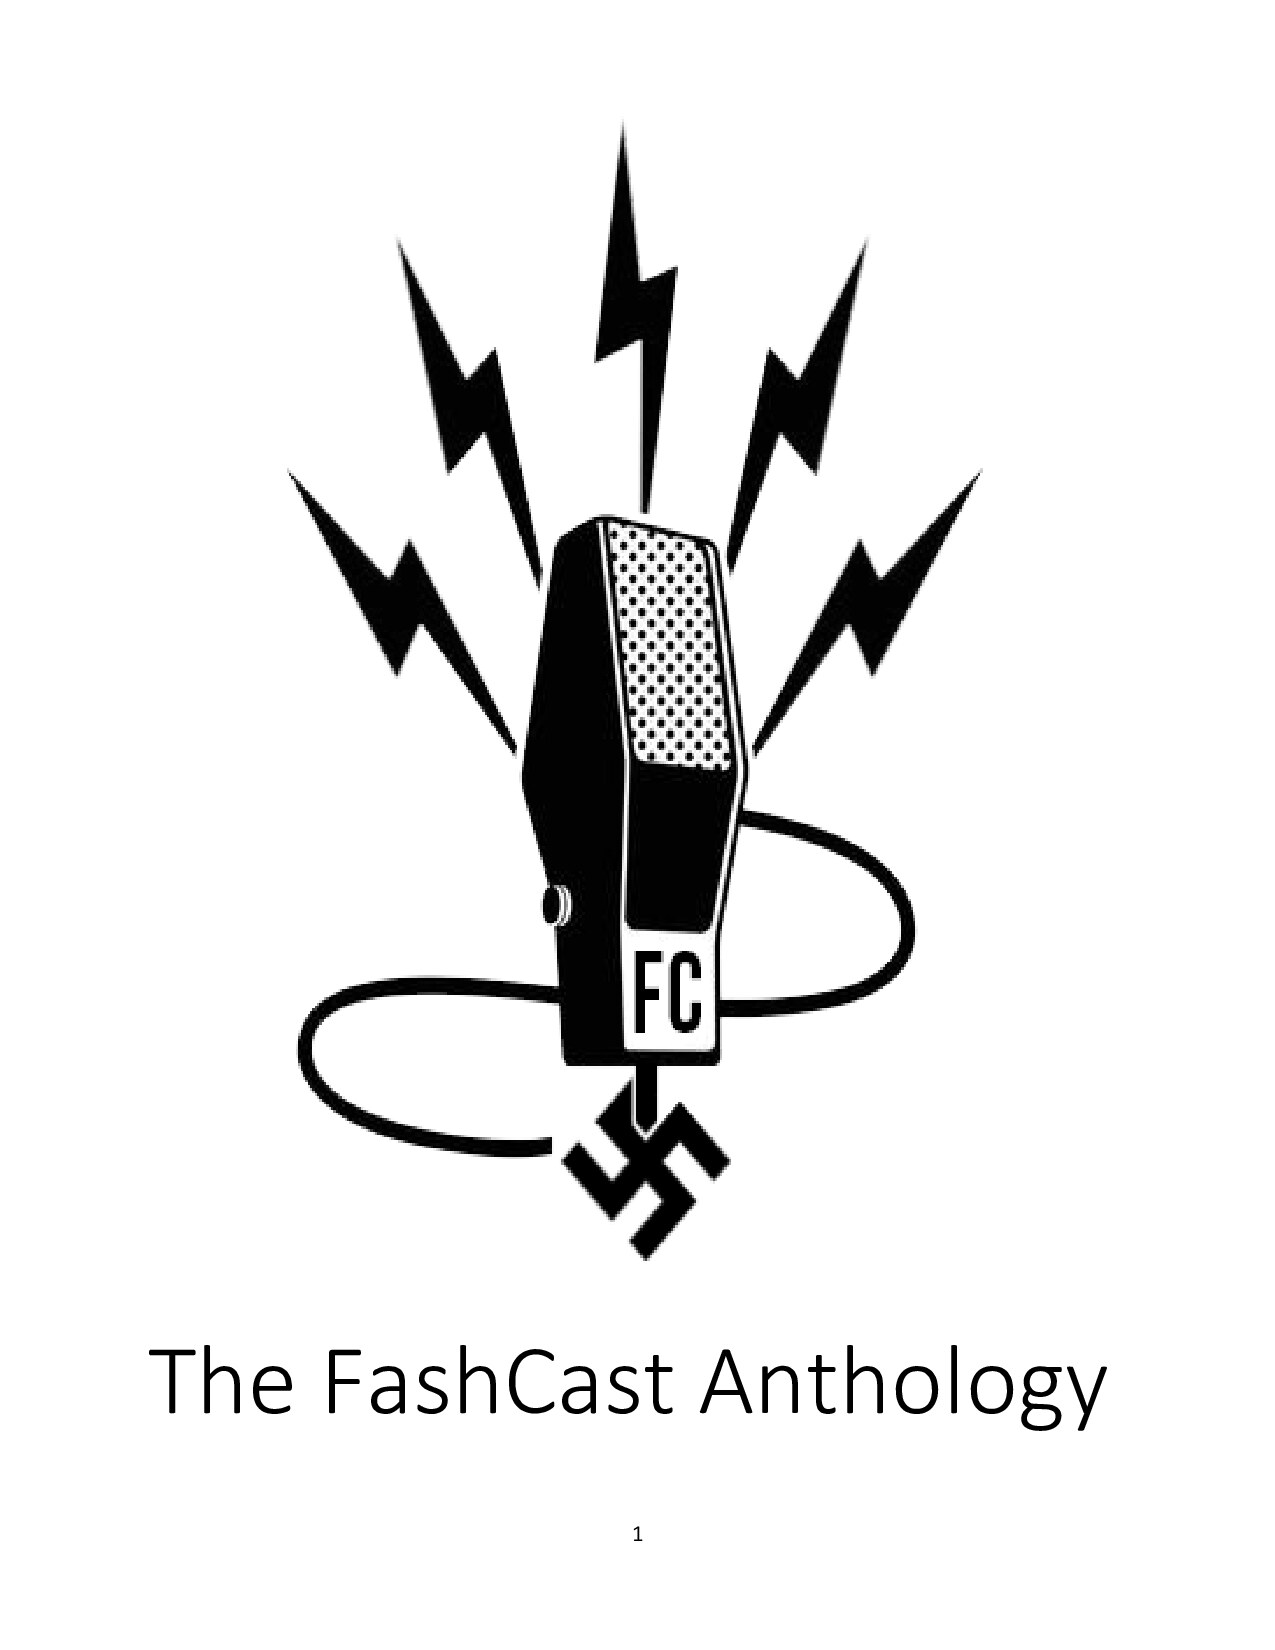 The FashCast Anthology